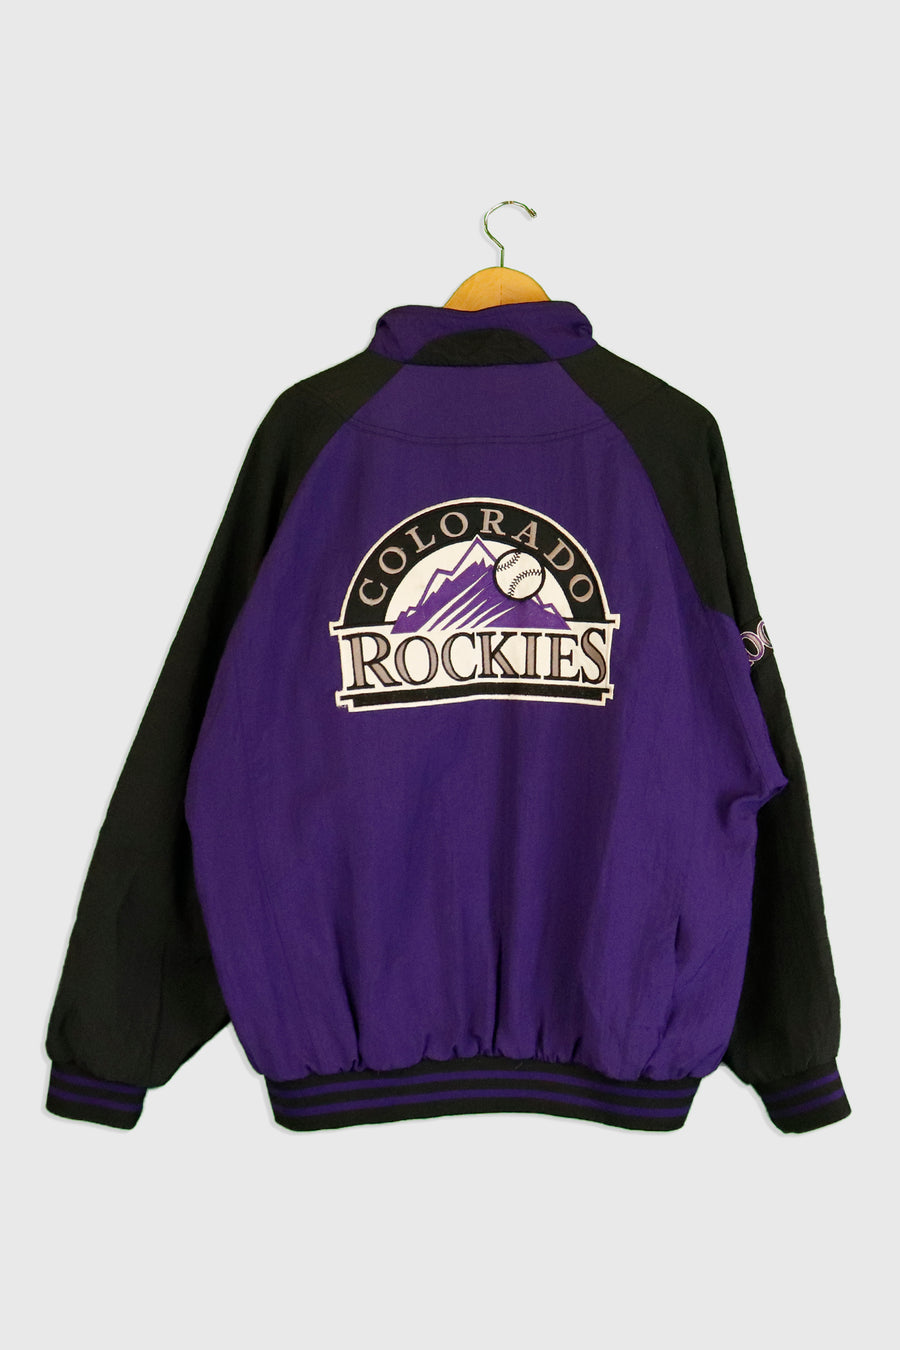 Vintage Colorado Rockies Baseball Jacket Sz XL